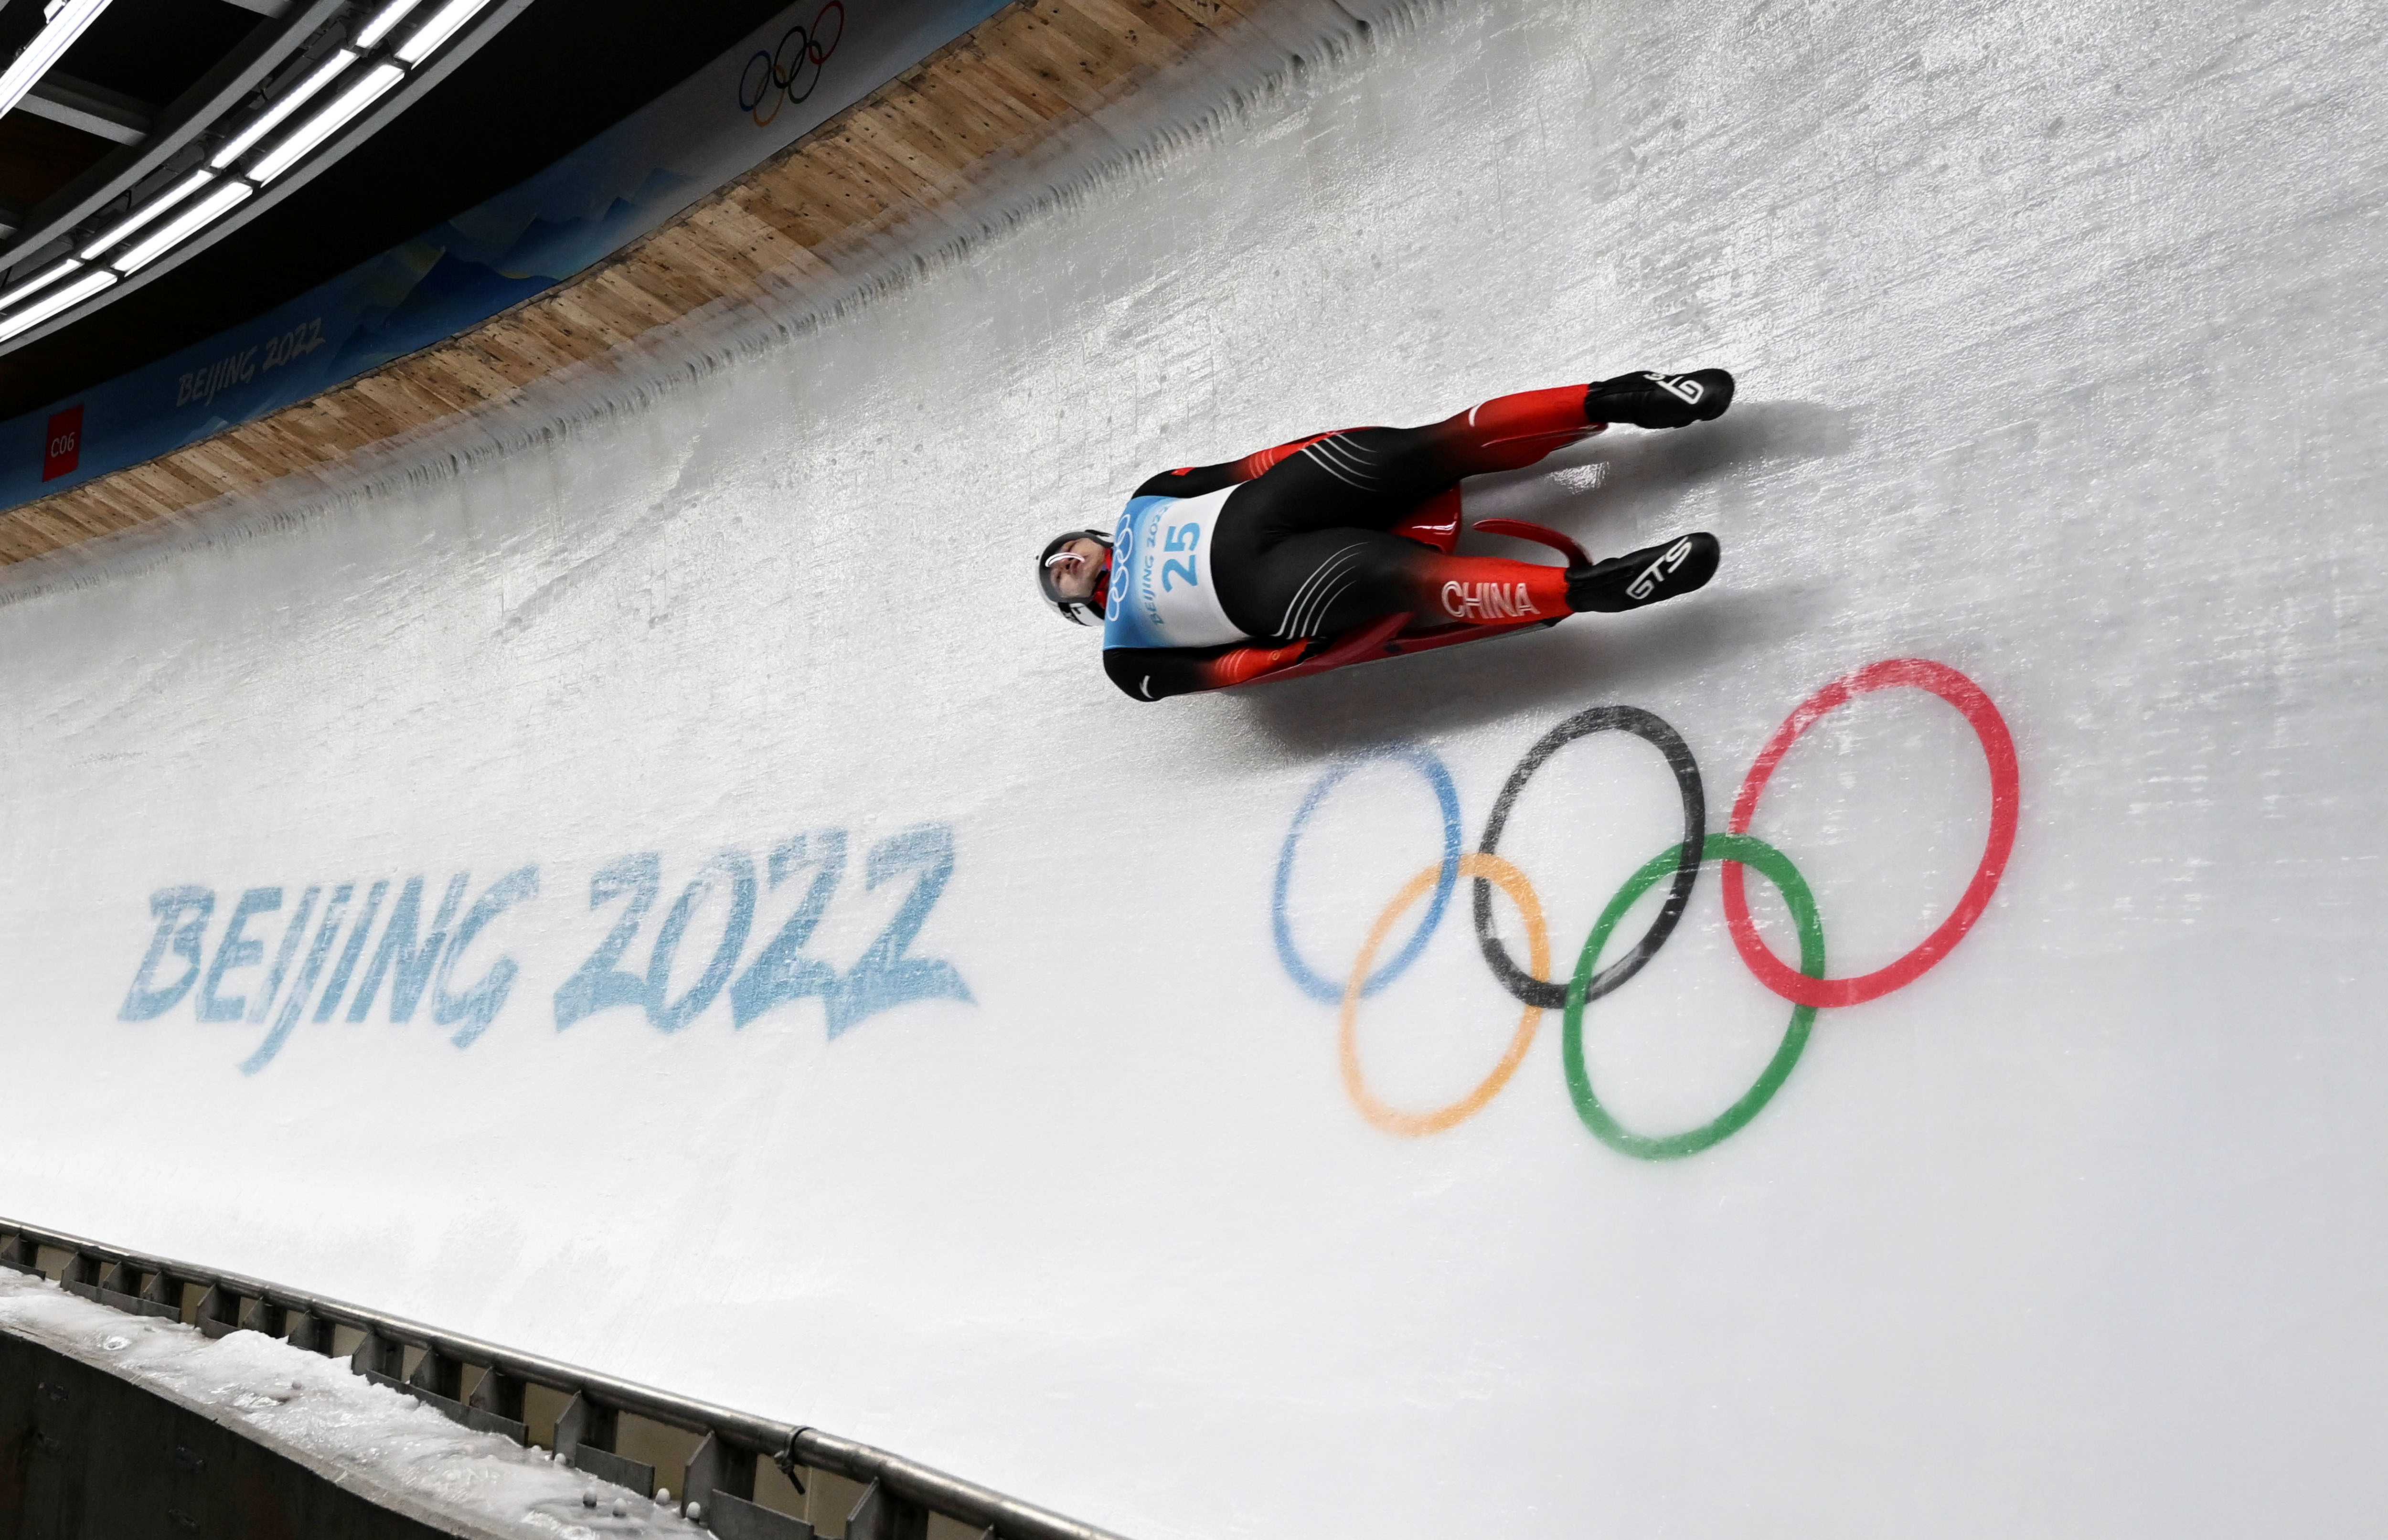 2月5日，北京2022年冬奥会男子单人雪橇项目比赛在国家雪车雪橇中心举行。中国选手范铎耀在比赛中。新华社记者贺长山摄